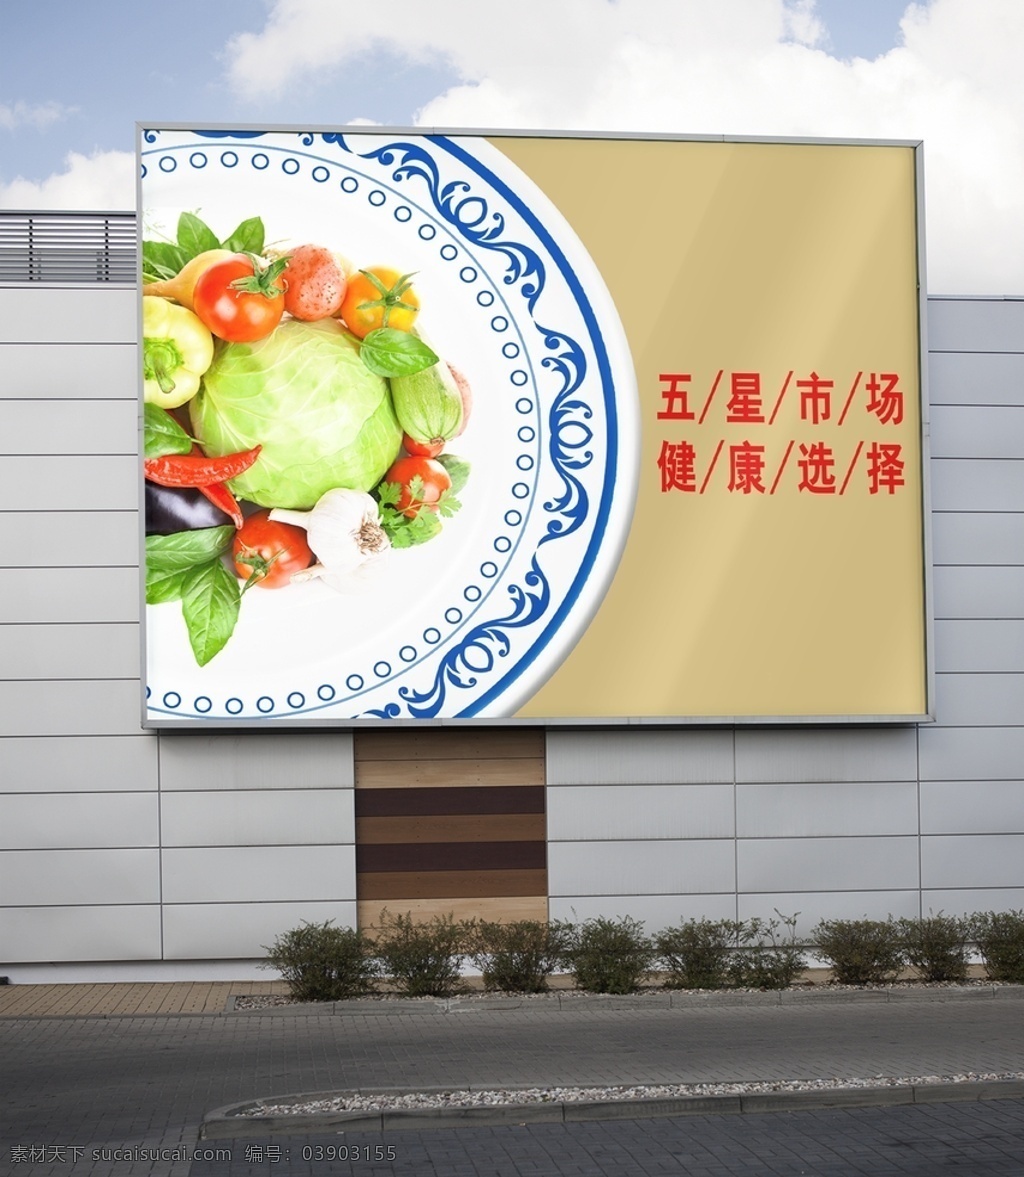 户外广告图片 户外广告 路牌宣传 城市文化 蔬菜广告 超市广告 企业户外宣传 路牌设计 农贸市场宣传 效果图 展板模板